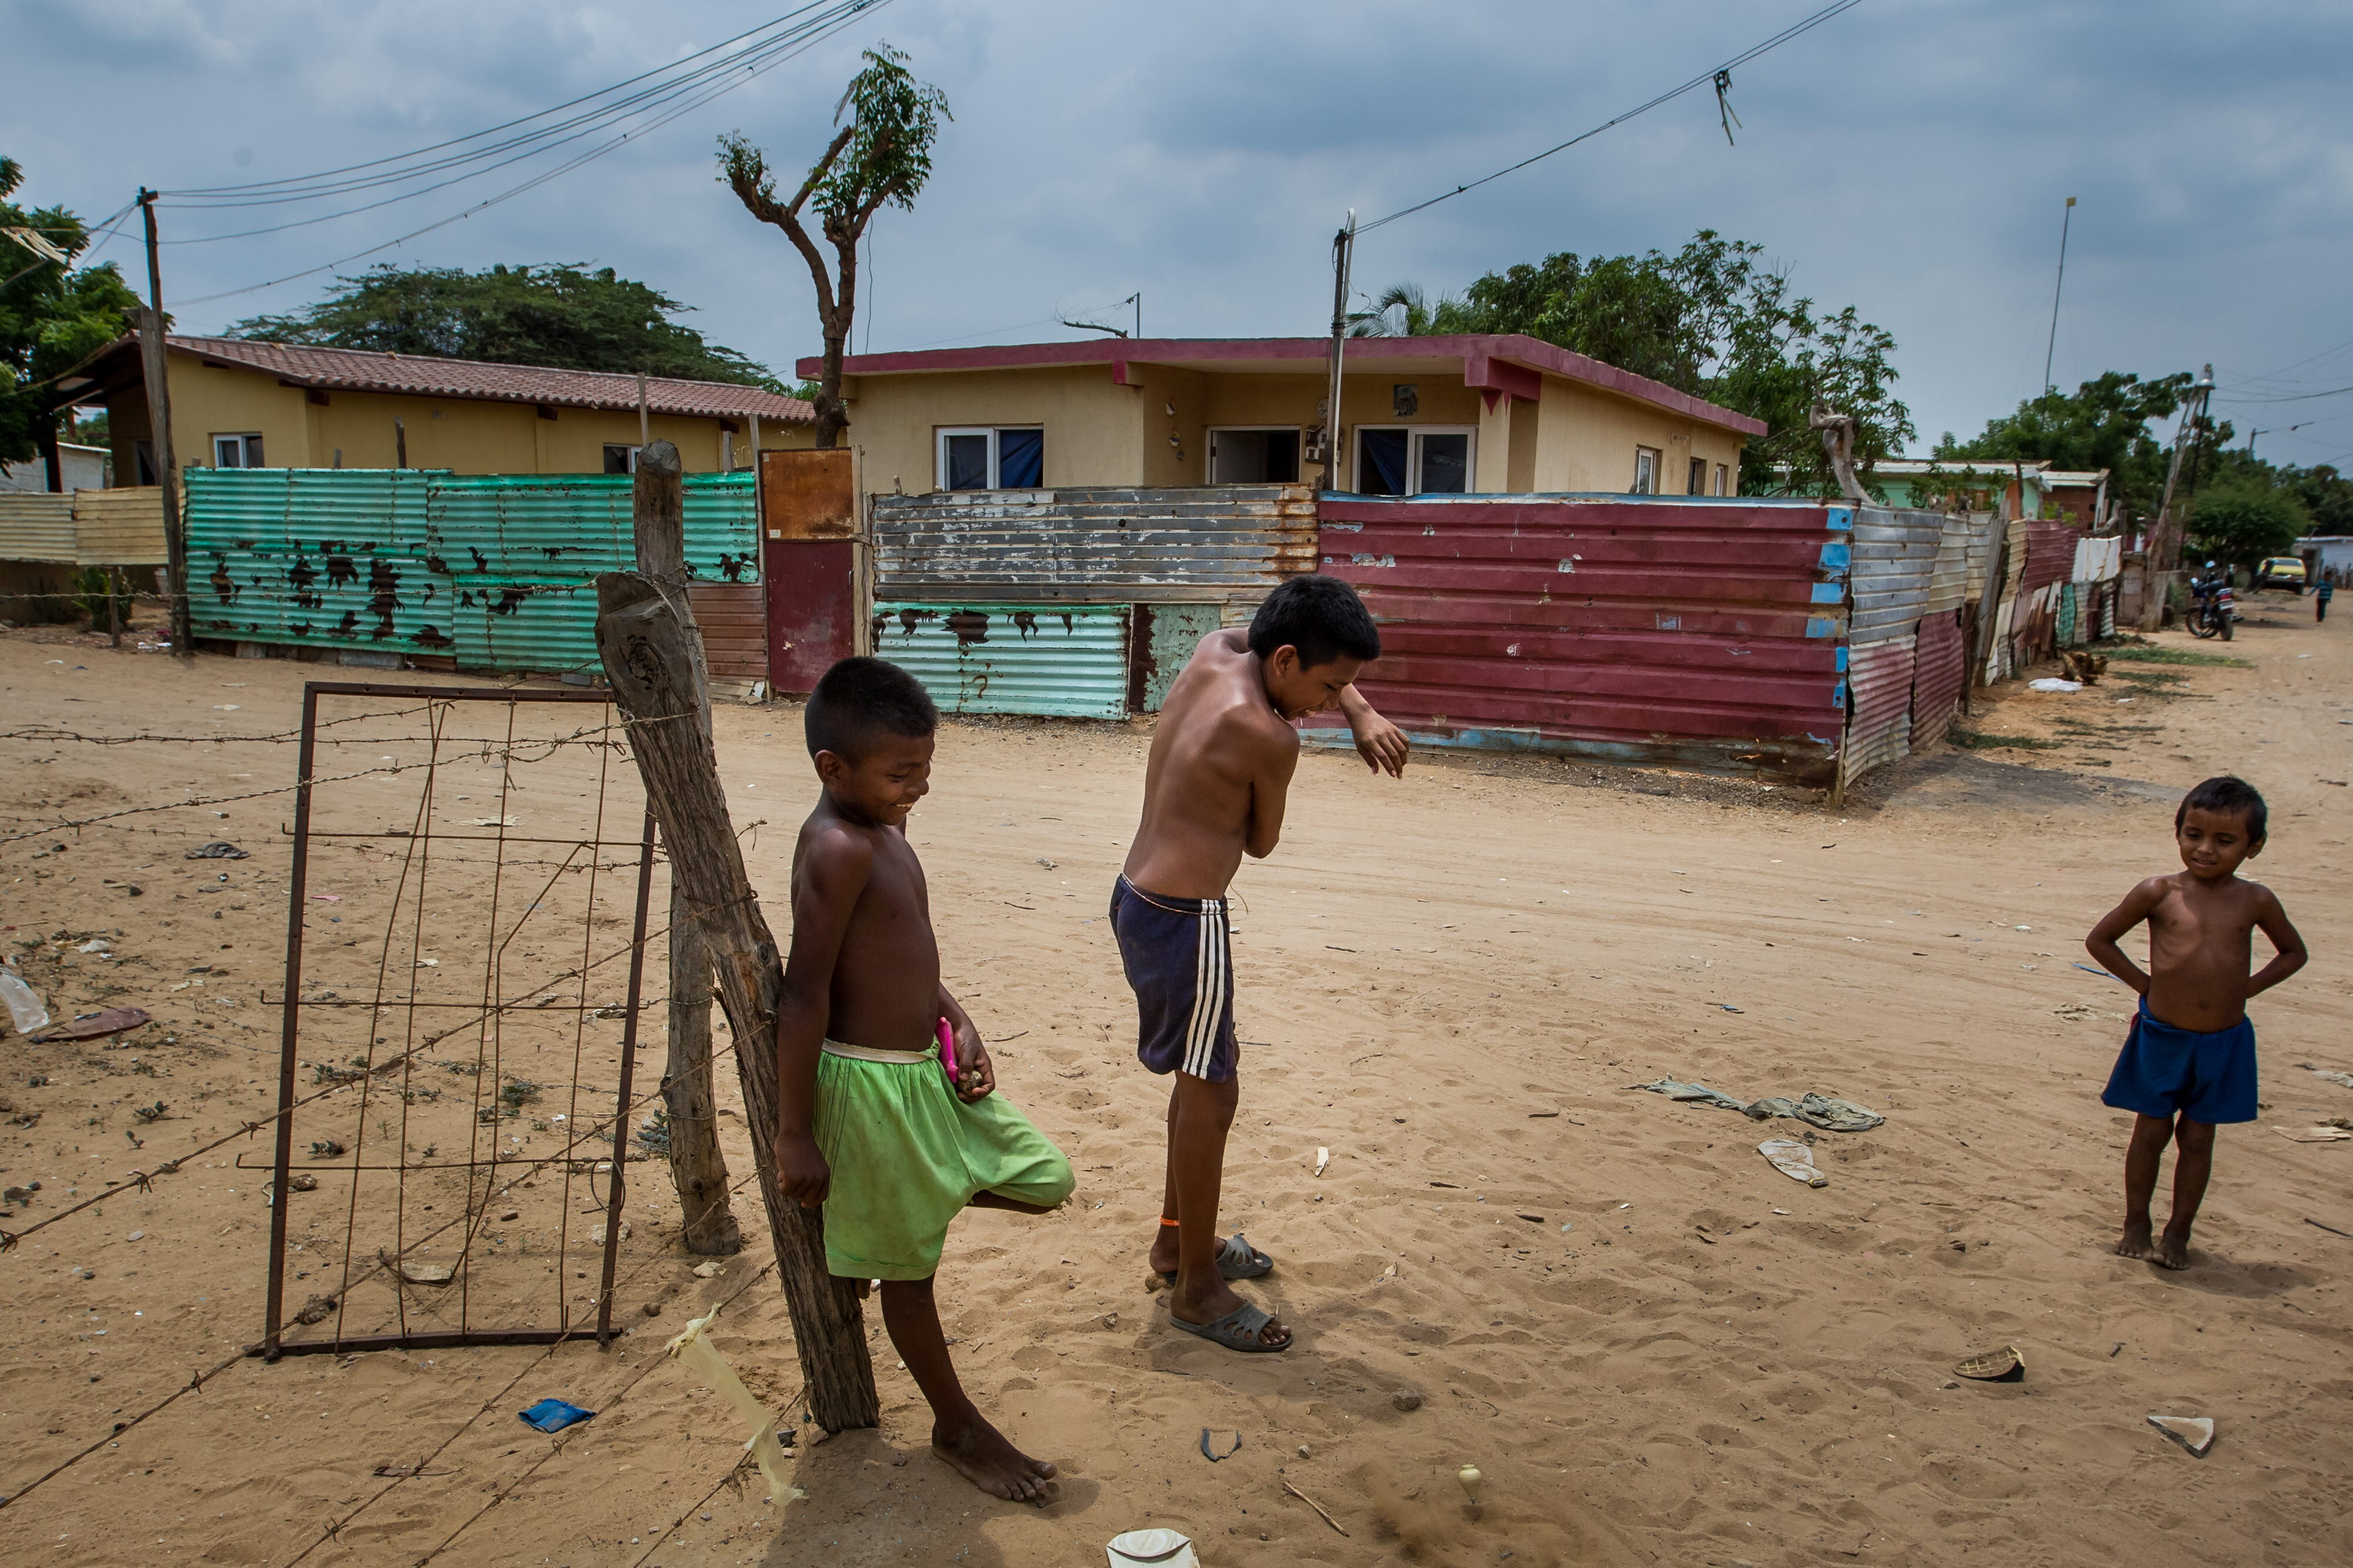 El sector Villa Fátima, habitado en su mayoría por la comunidad indígena Wayú, es uno de los más afectados.